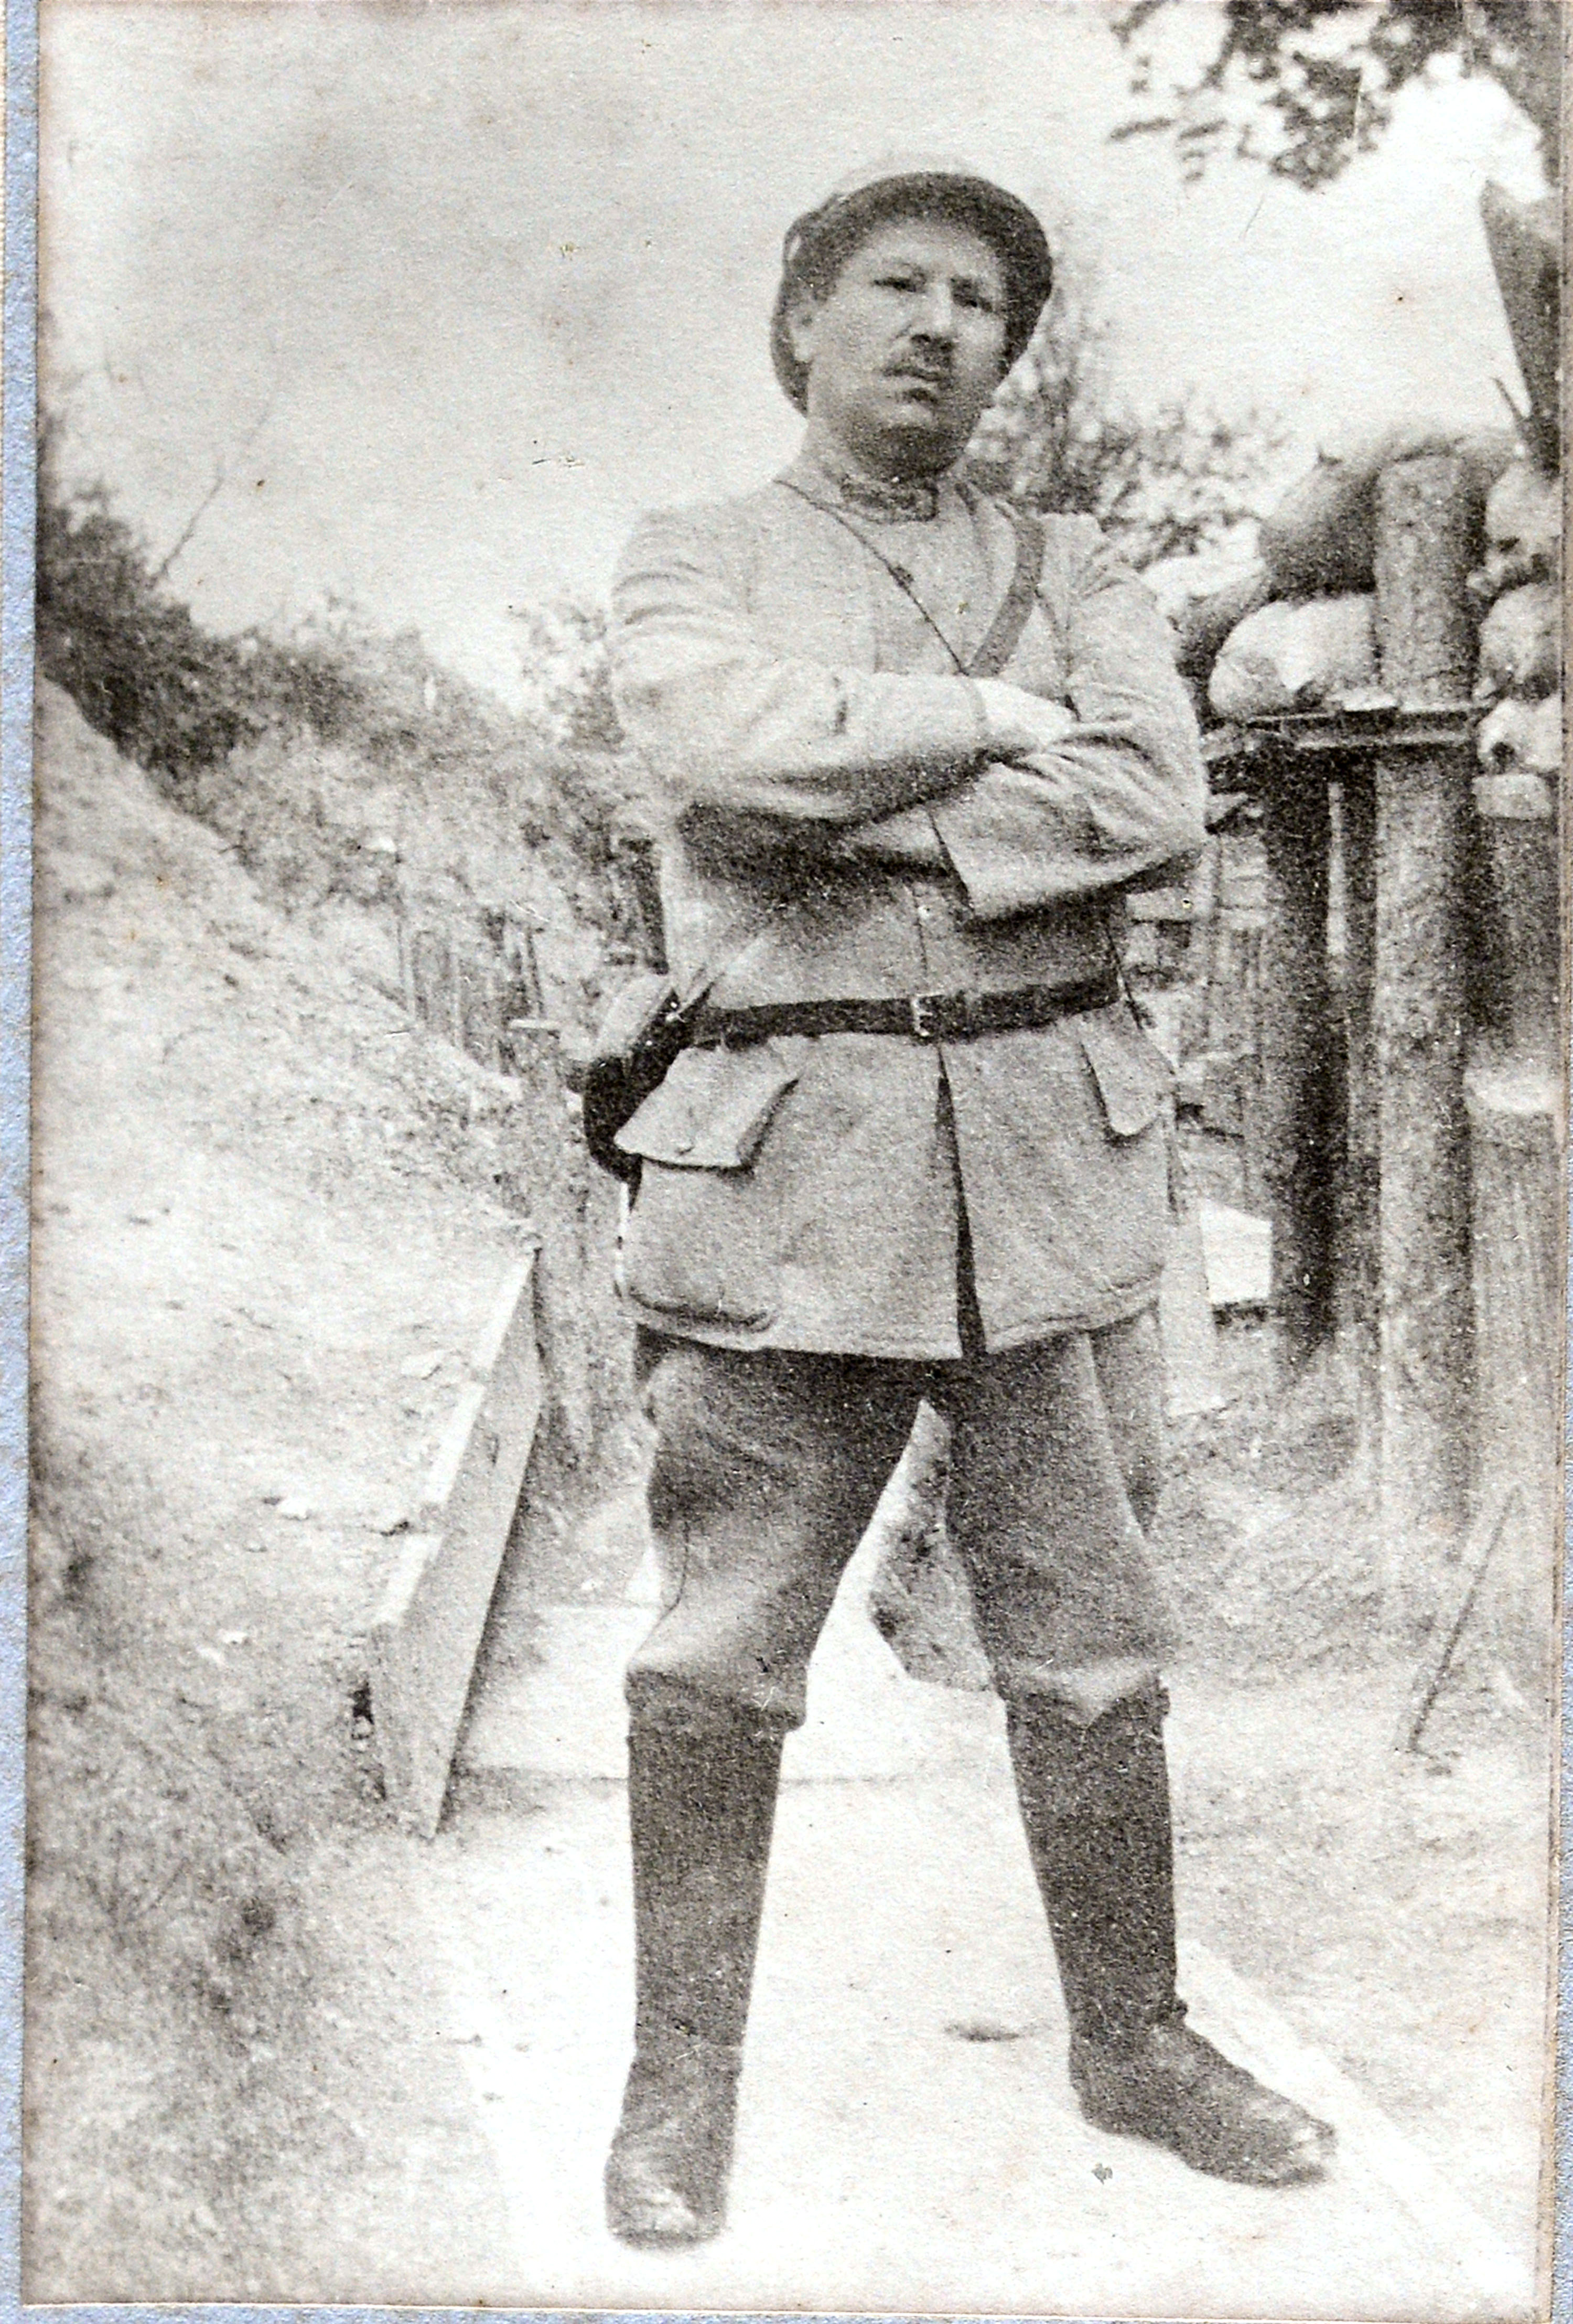 20130708 Almelo - repro's foto's van Almeloer Jules Hedeman. o.a. als soldaat staand met geweer aan de voet. Hedeman sneuvelde voor Verdun in 1916. Editie AL Spectrum TT20130708 foto Toma Tudor